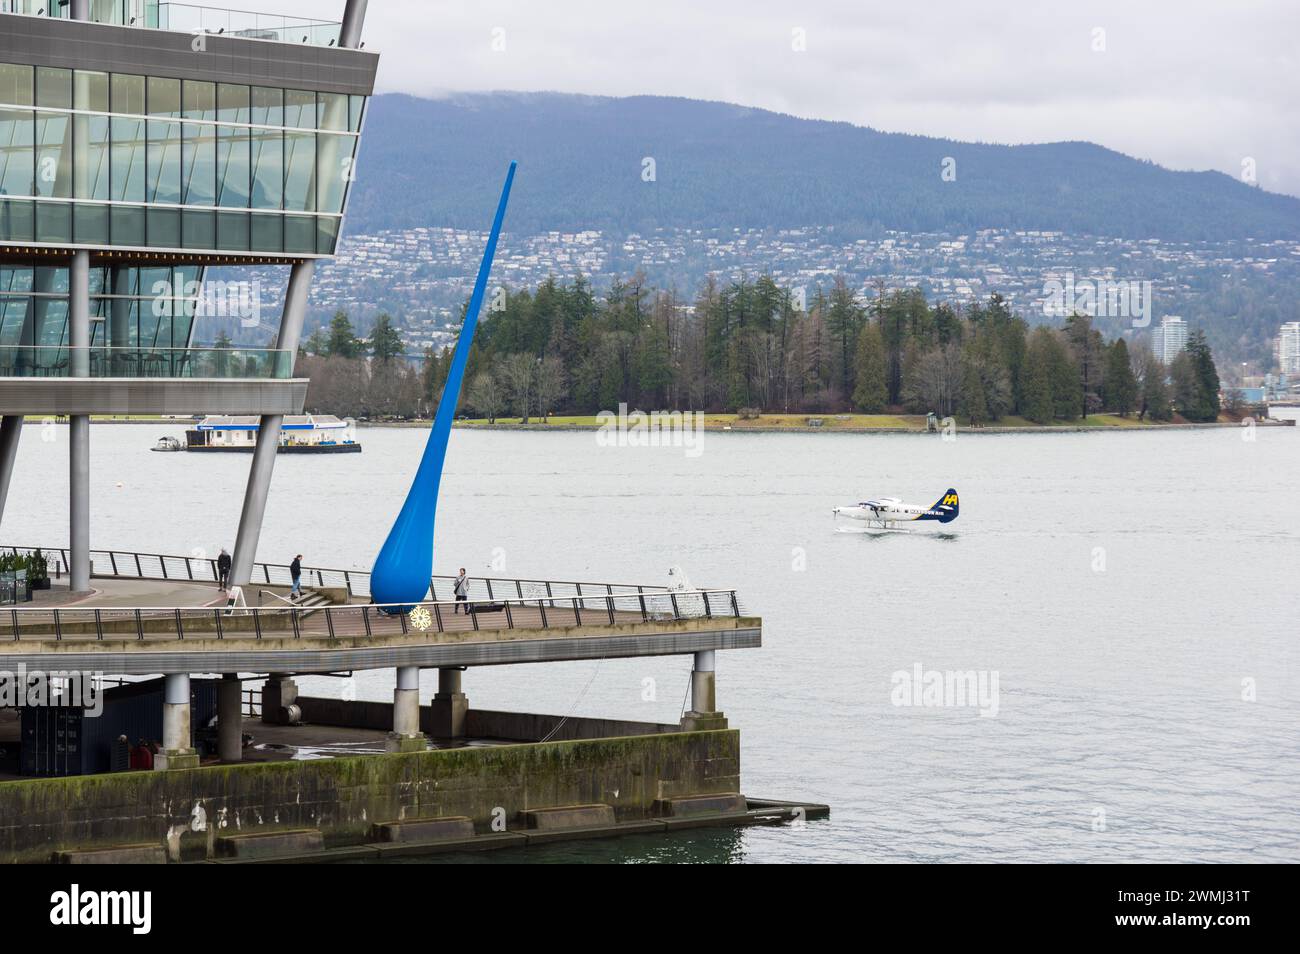 Una vista del Canada Place Convention Center, che mostra la discesa, le persone che camminano sulla banchina e un aereo marittimo della Harbour Air appena atterrato. Foto Stock